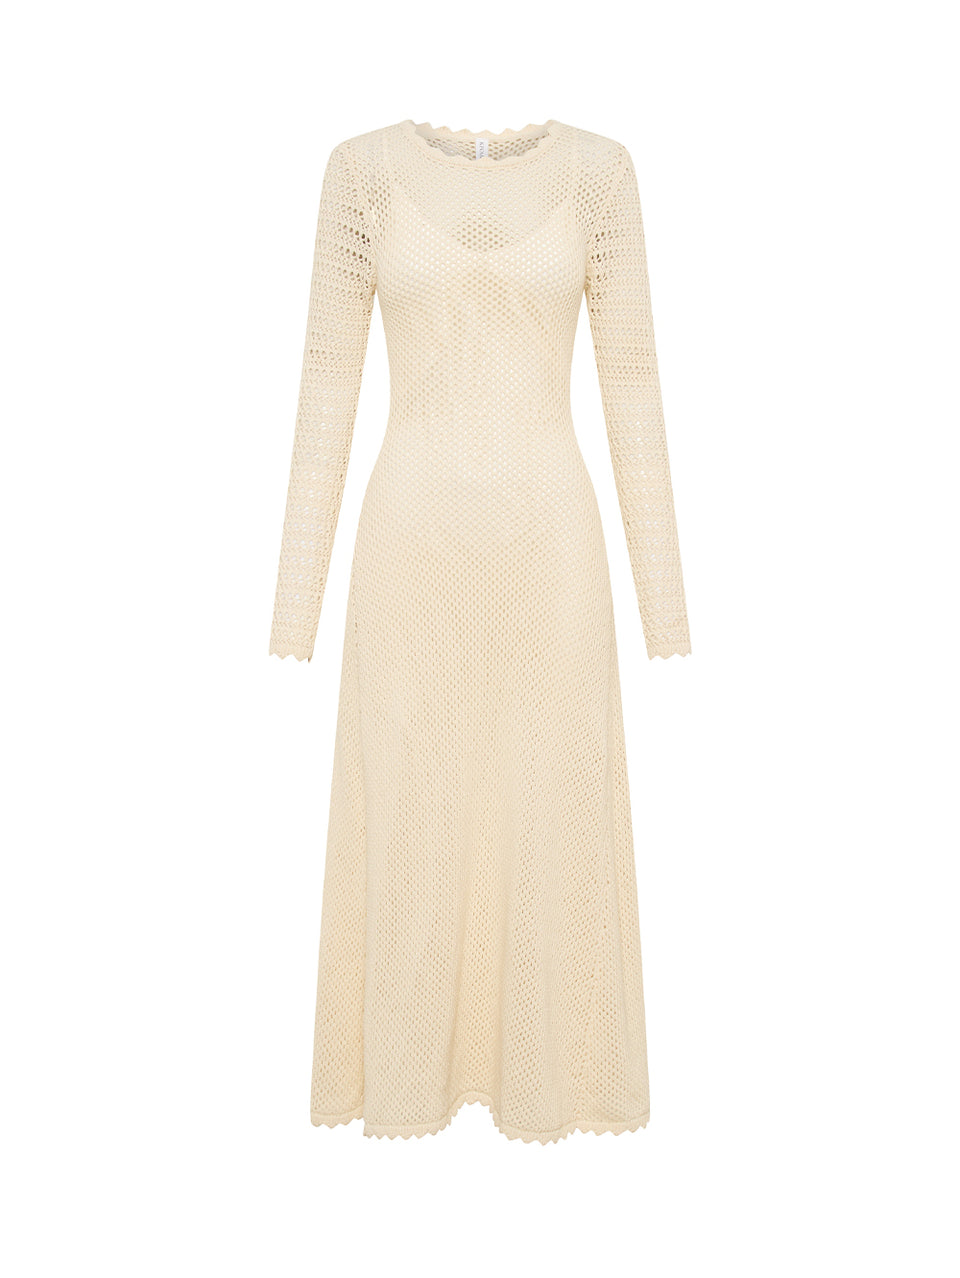 Ingrid Knit Midi Dress KIVARI | White knit dress